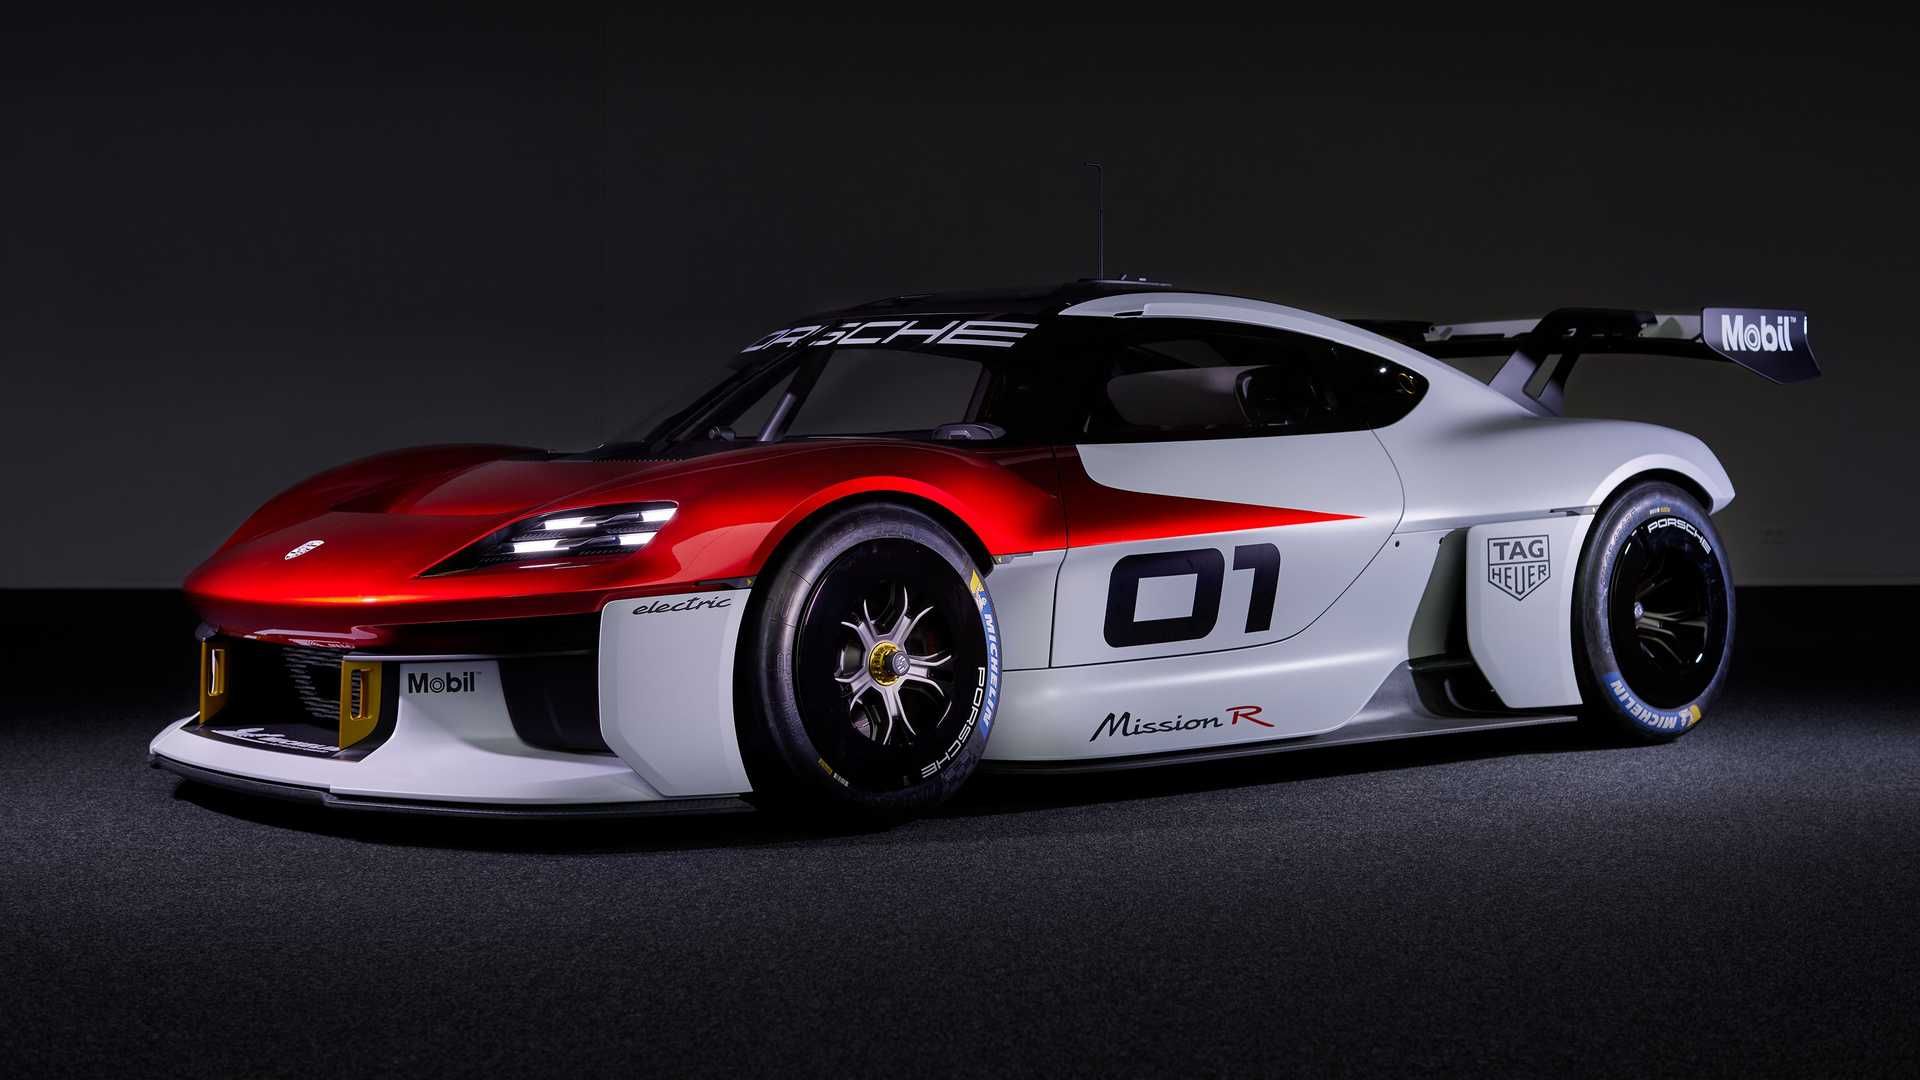 نمای سه چهارم خودروی الکتریکی مفهومی پورشه میشن آر / Porsche Mission R Concept EV